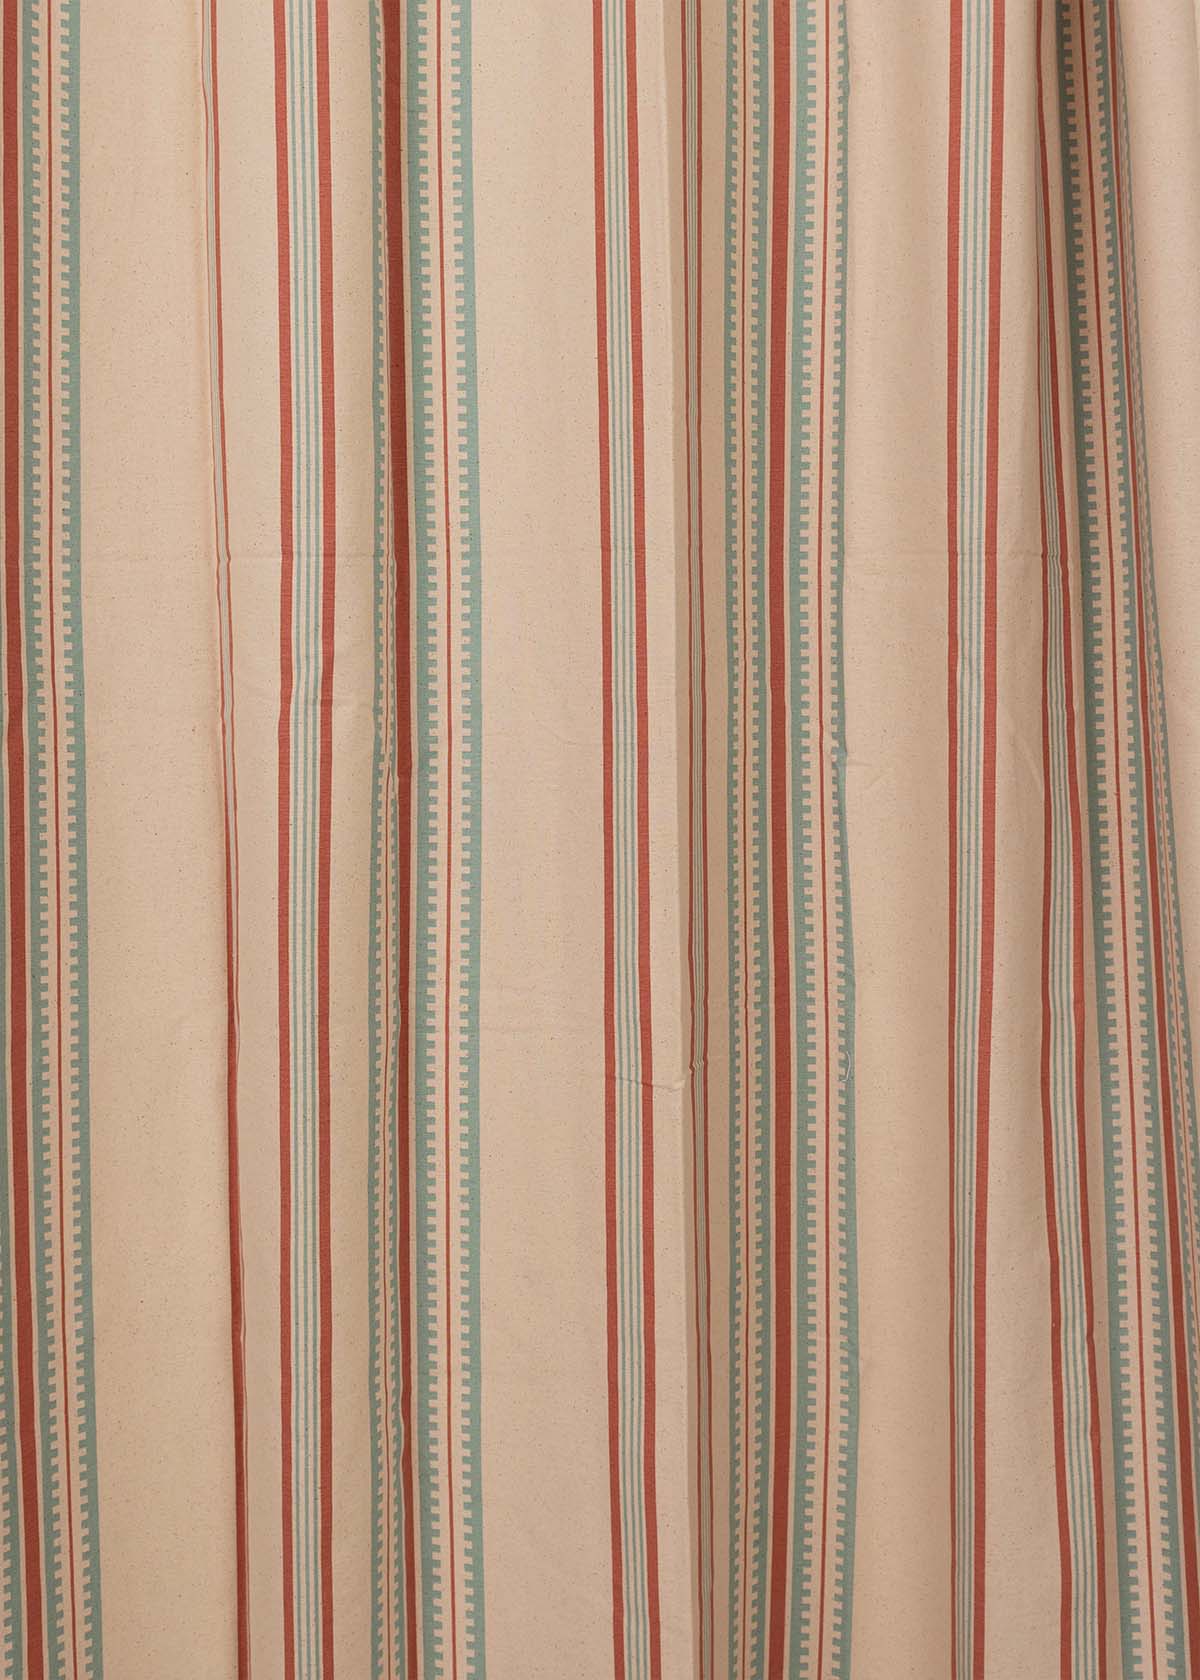 Roman Stripes printed cotton Fabric - Multicolor